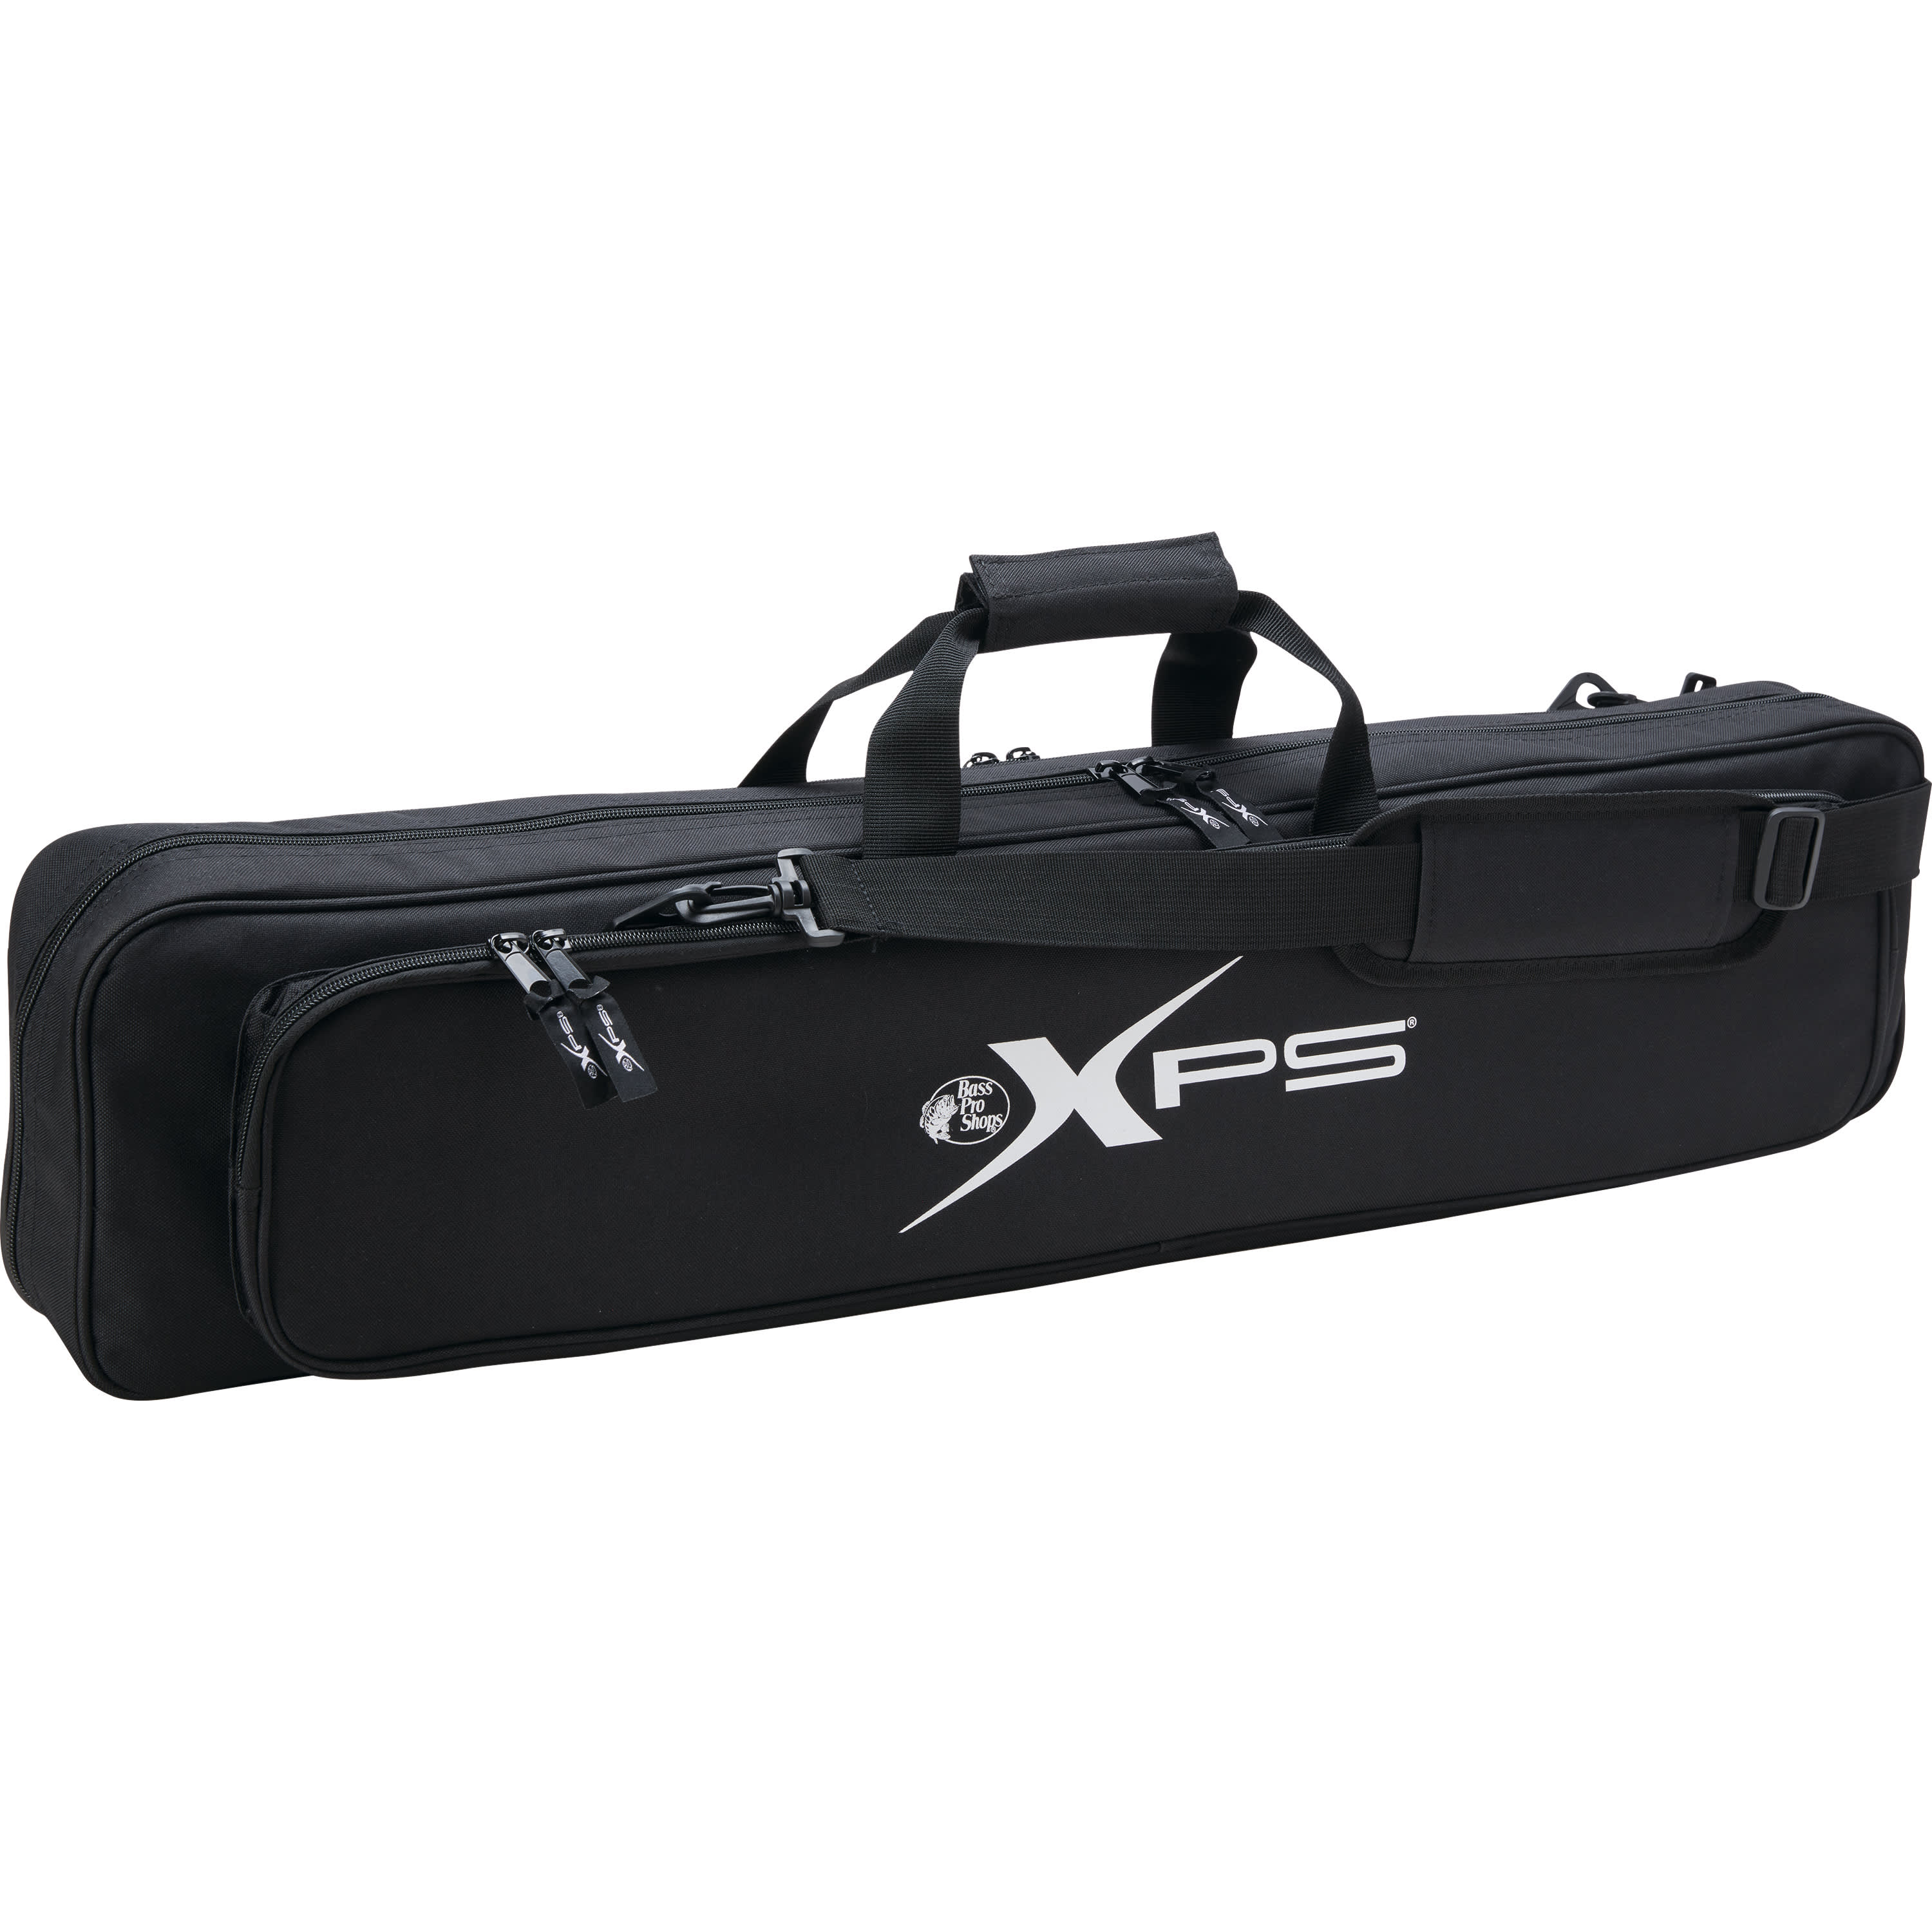 Bass Pro Shops XPS 6-Rod Ice Case - Cabelas - XPS - Storage 